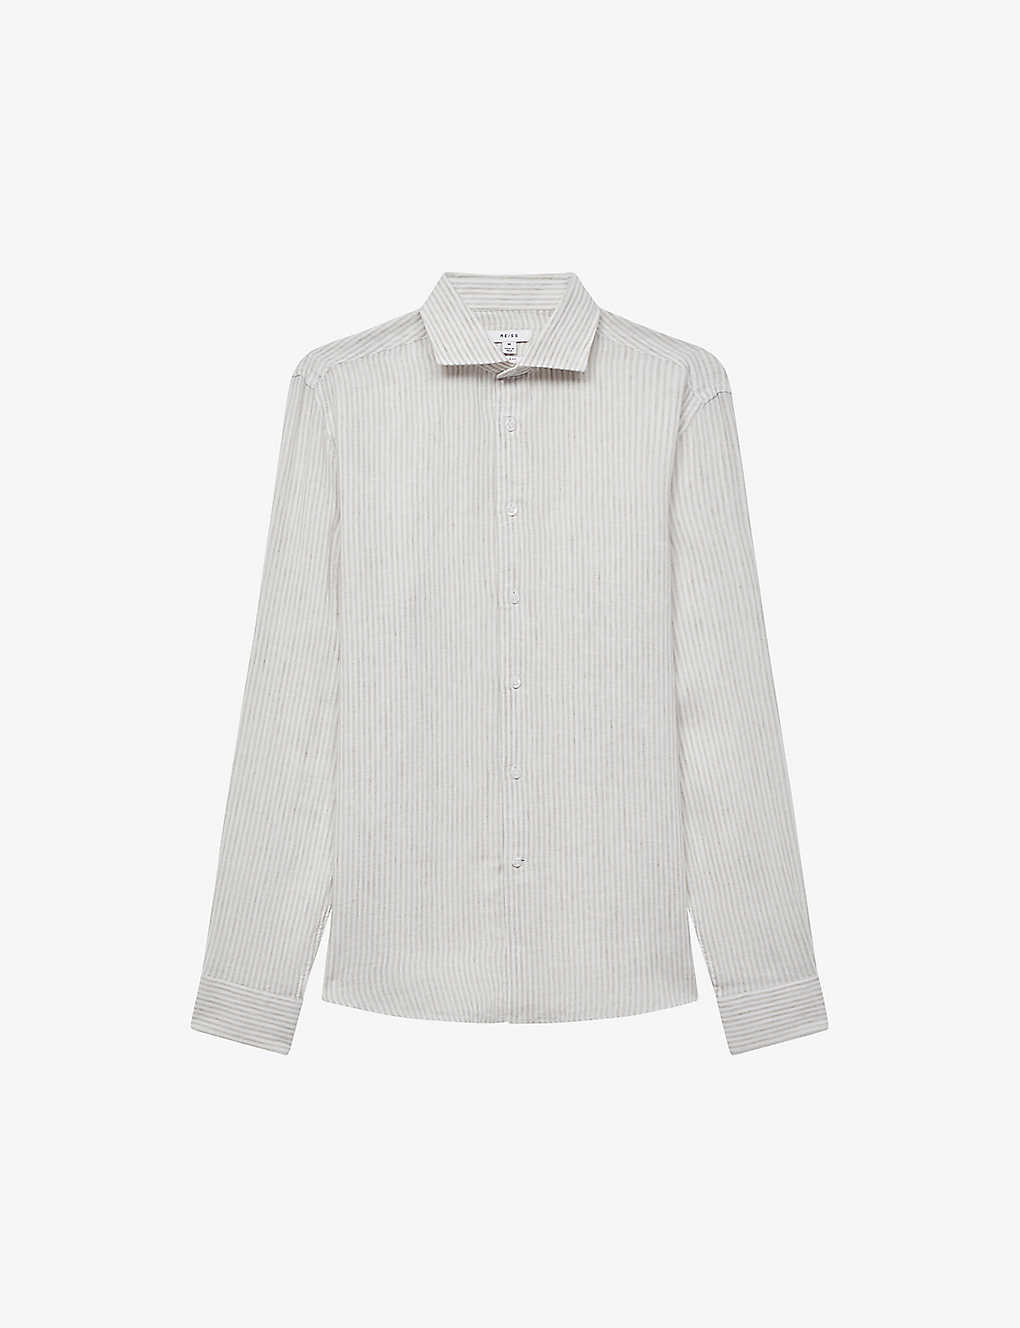 REISS - Ruban regular-fit long-sleeve linen shirt | Selfridges.com